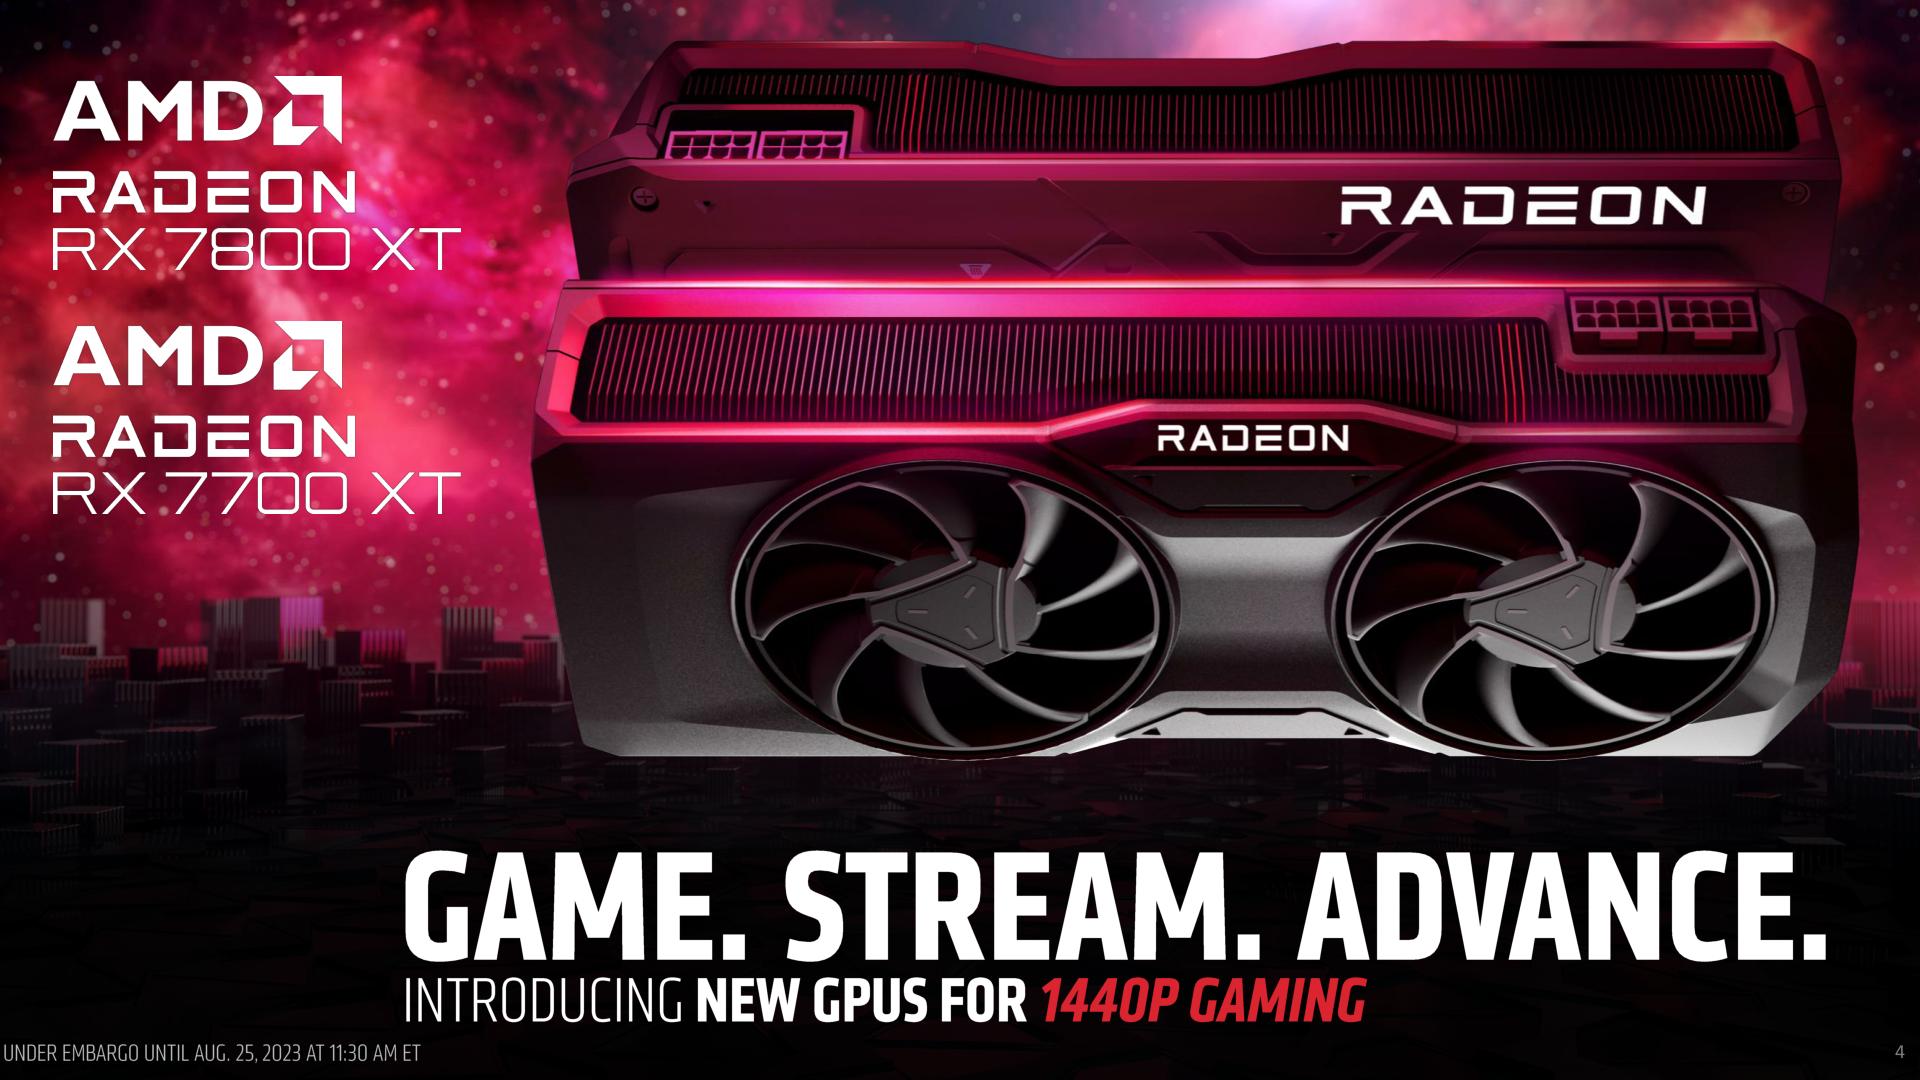 AMD Radeon RX 7800/7700 XT